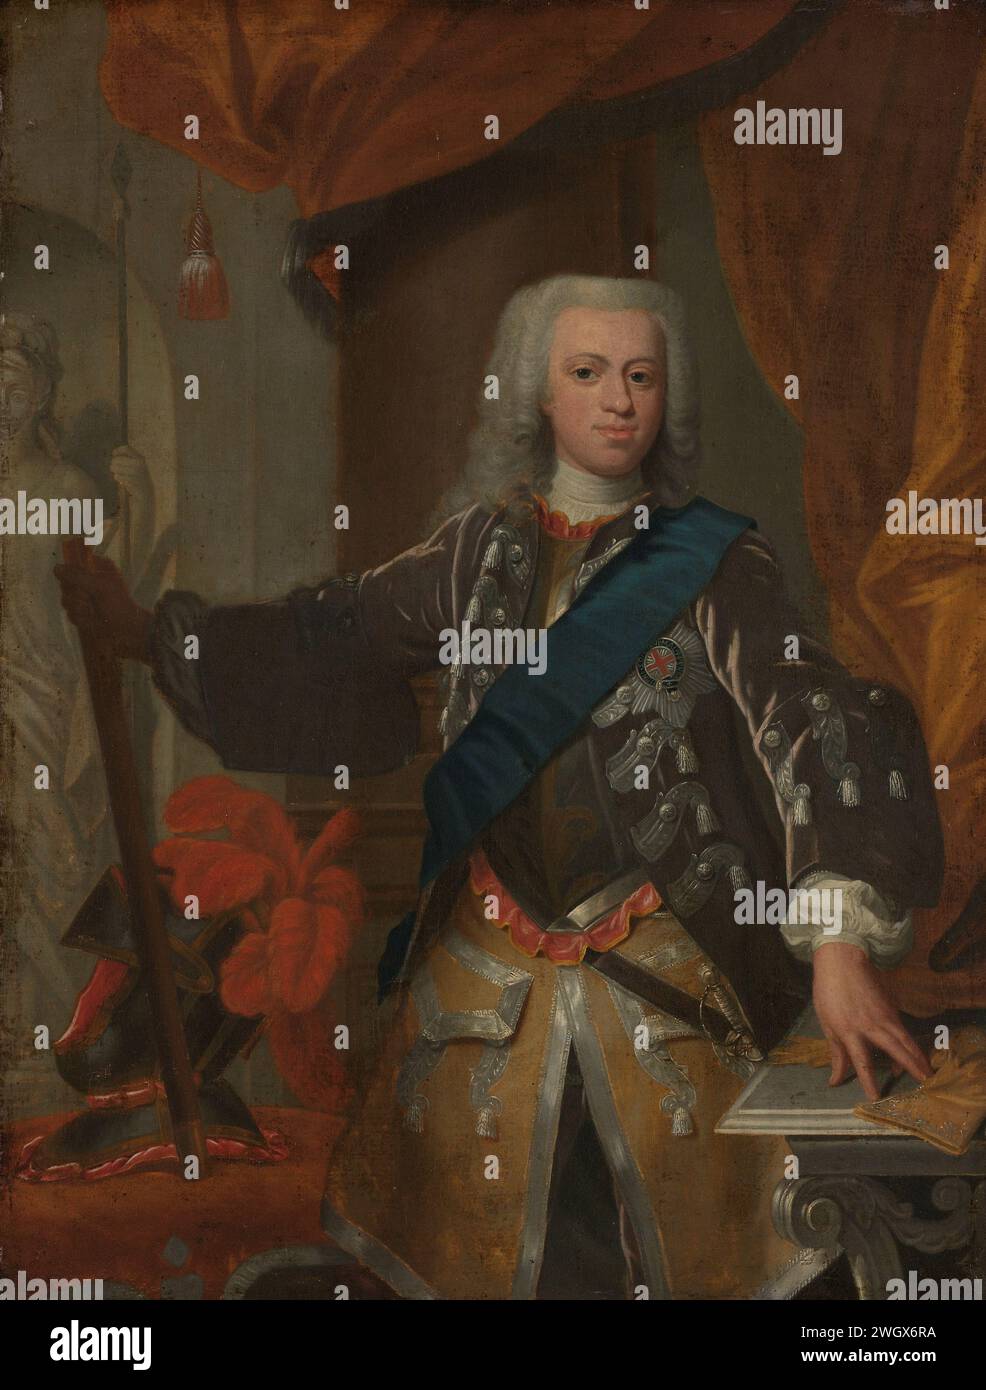 Guillaume IV (1711-51), Prince d'Orange, Hans Hysing (attribué à), 1730 - 1753 peinture Portrait de Guillaume IV, Prince d'Orange. Genou, debout avec la main gauche sur une table et commadosta dans la main droite. Le personnel s'appuyait sur une chaise sur laquelle son casque plumeux se tenait également. Sur la gauche en arrière-plan, une image d'une guerrière ou d'une déesse avec une lance. toile. peinture à l'huile (peinture) personnes historiques. stadtholder Banque D'Images